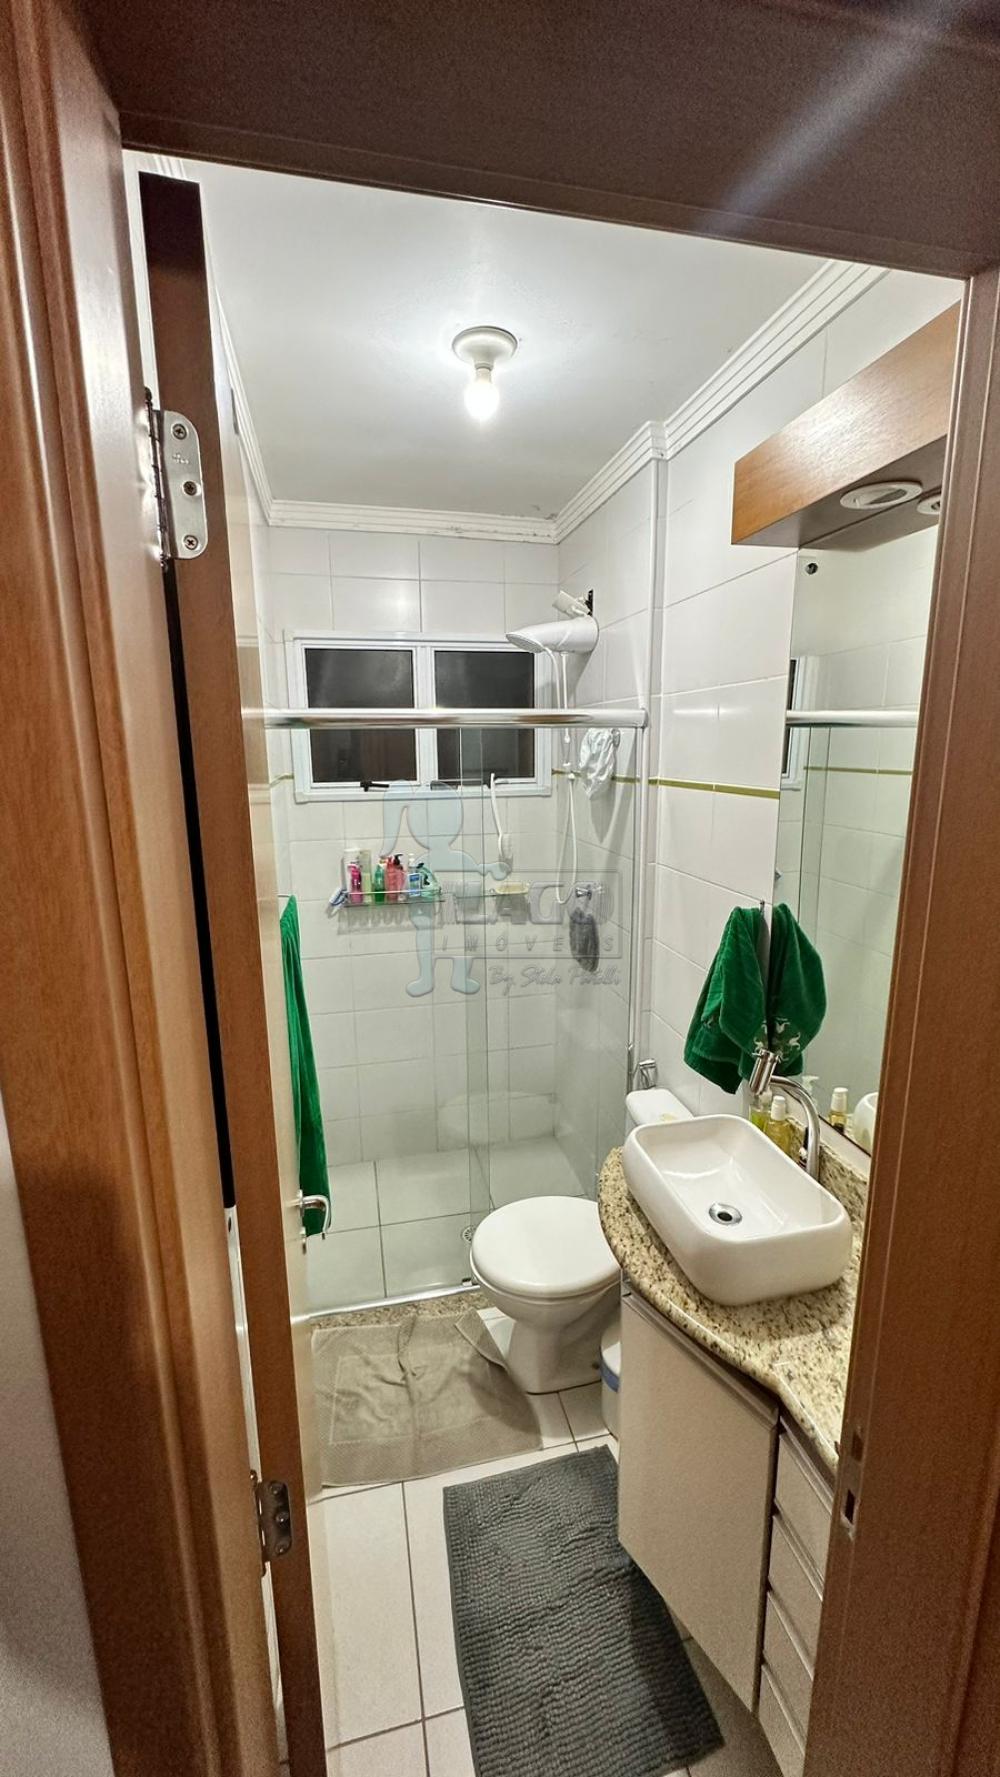 Comprar Casas / Condomínio em Sertãozinho R$ 290.000,00 - Foto 6